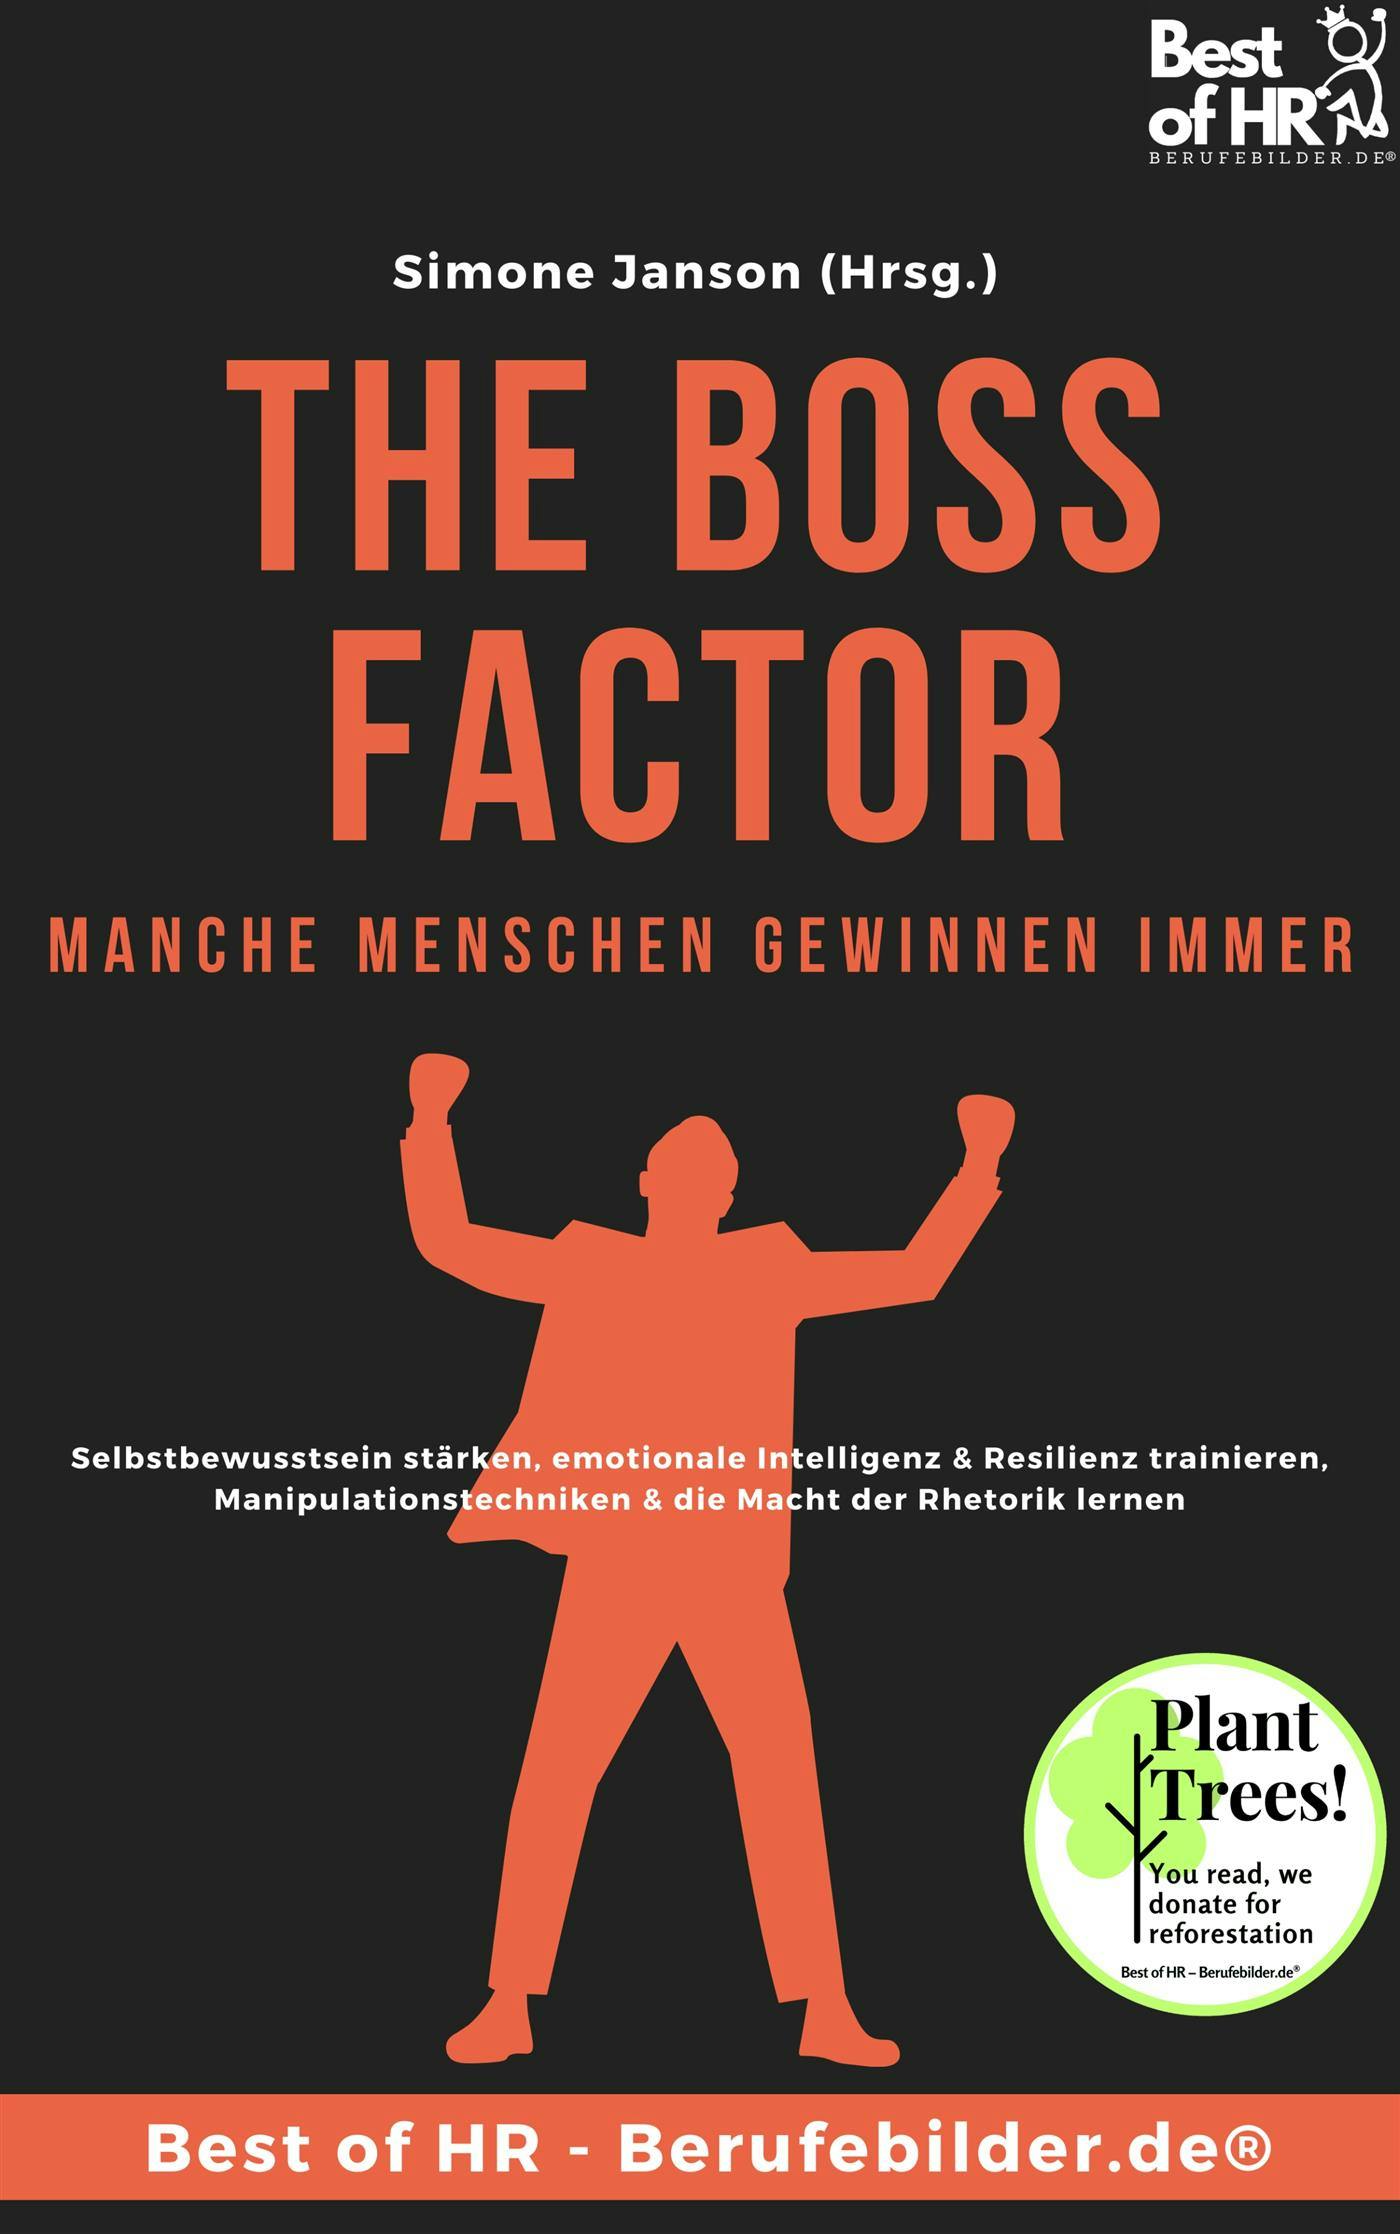 The Boss Factor! Manche Menschen gewinnen immer - undefined